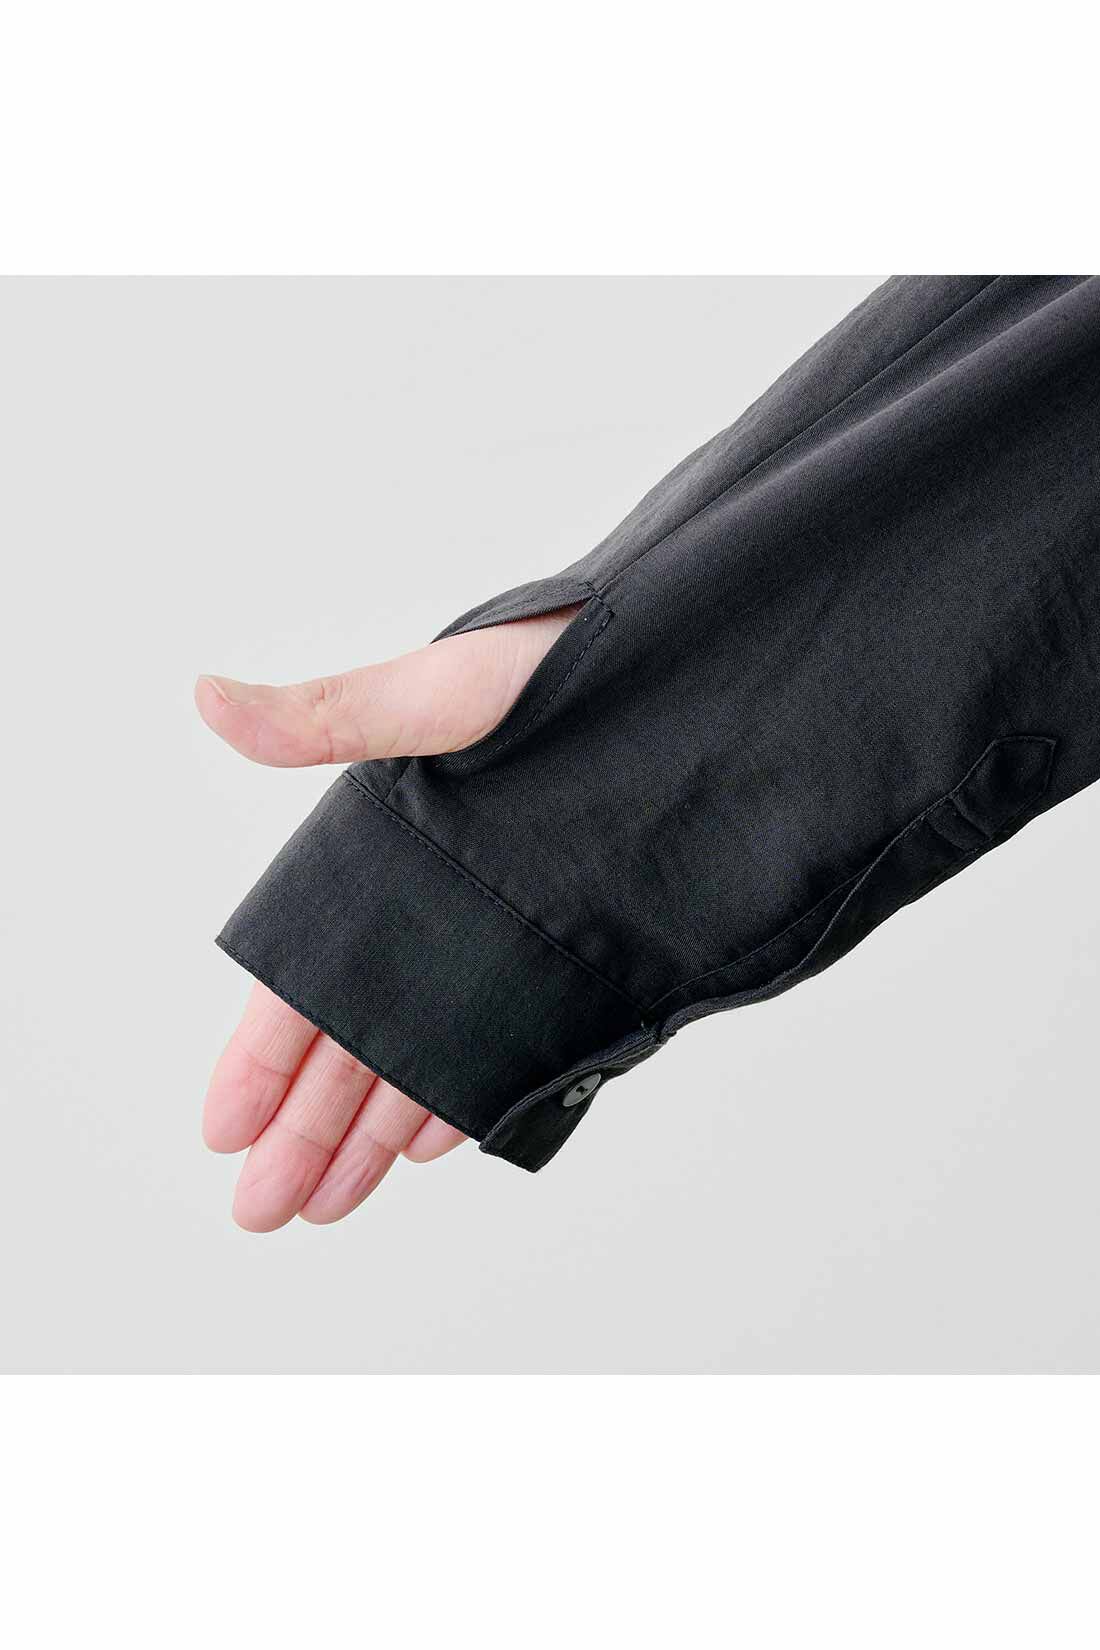 Real Stock|IEDIT[イディット]　衿にワイヤーを入れたUV加工のふわっと軽いロングシャツ〈ピンクベージュ〉|親指ホール付きの長めの袖口は手の甲までしっかりカバー。 ※お届けするカラーとは異なります。